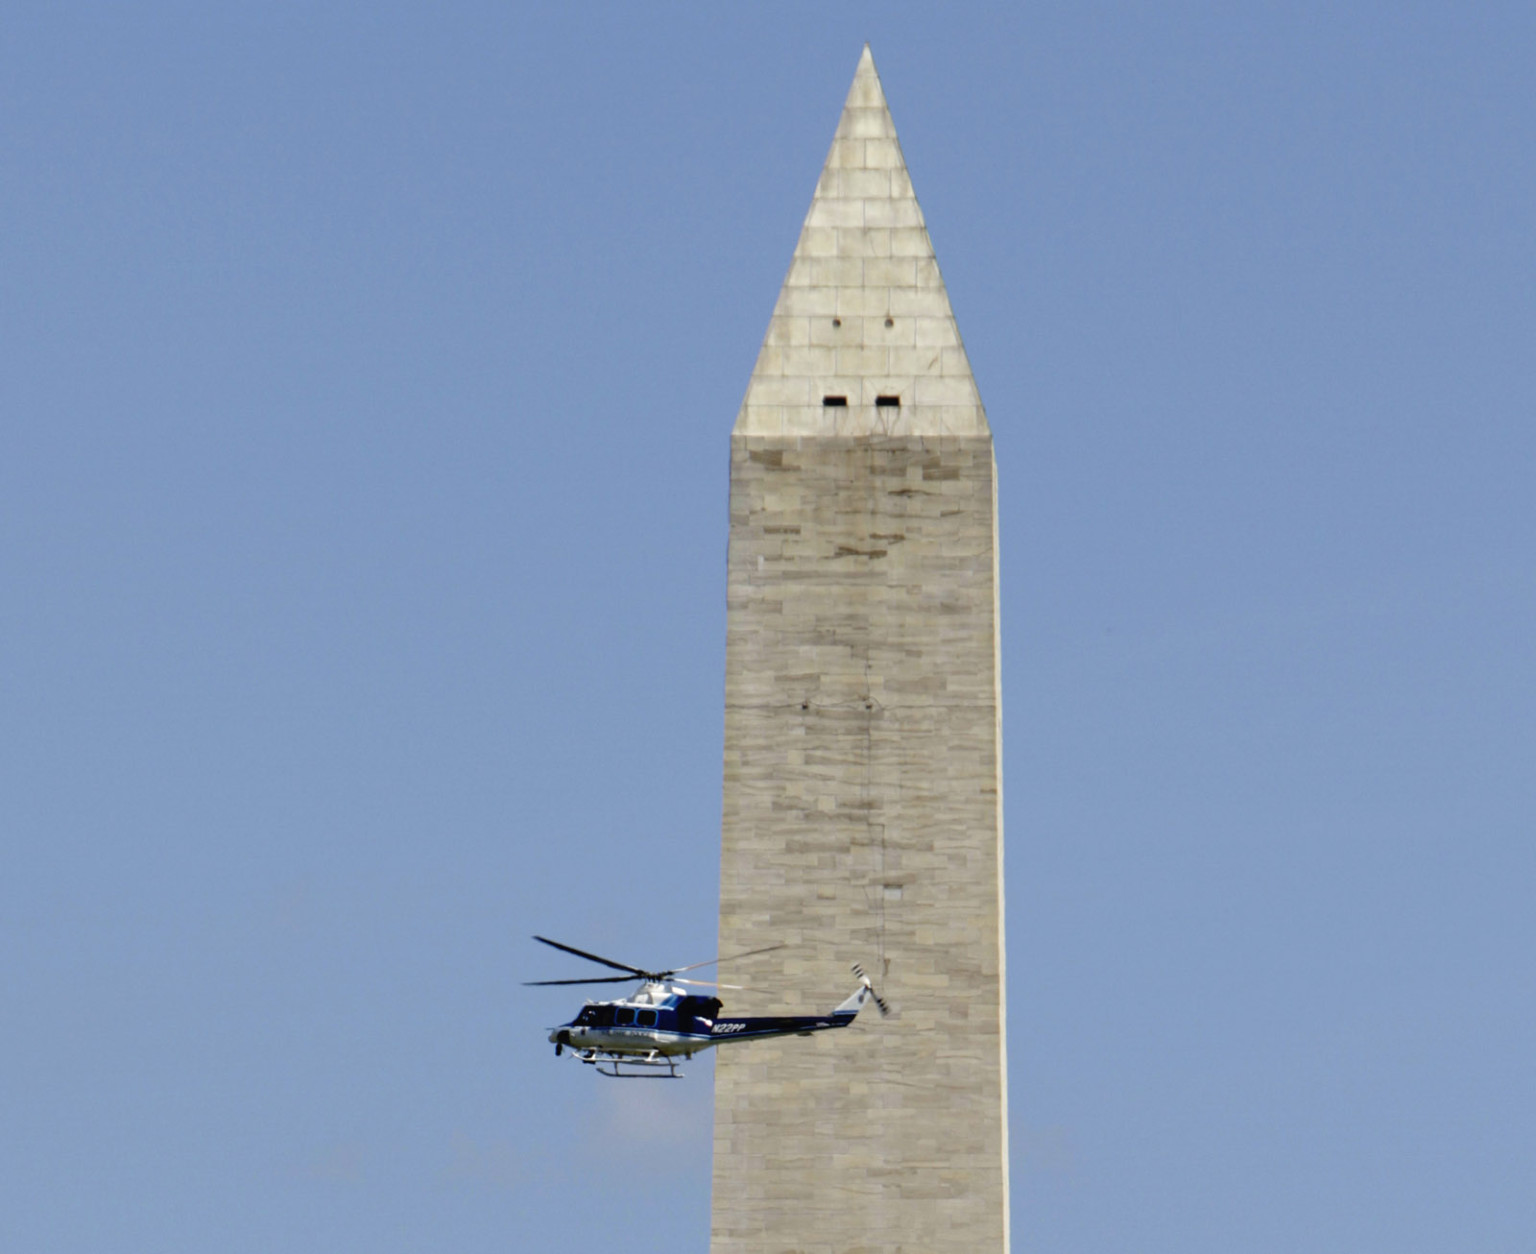 Washington monument photo